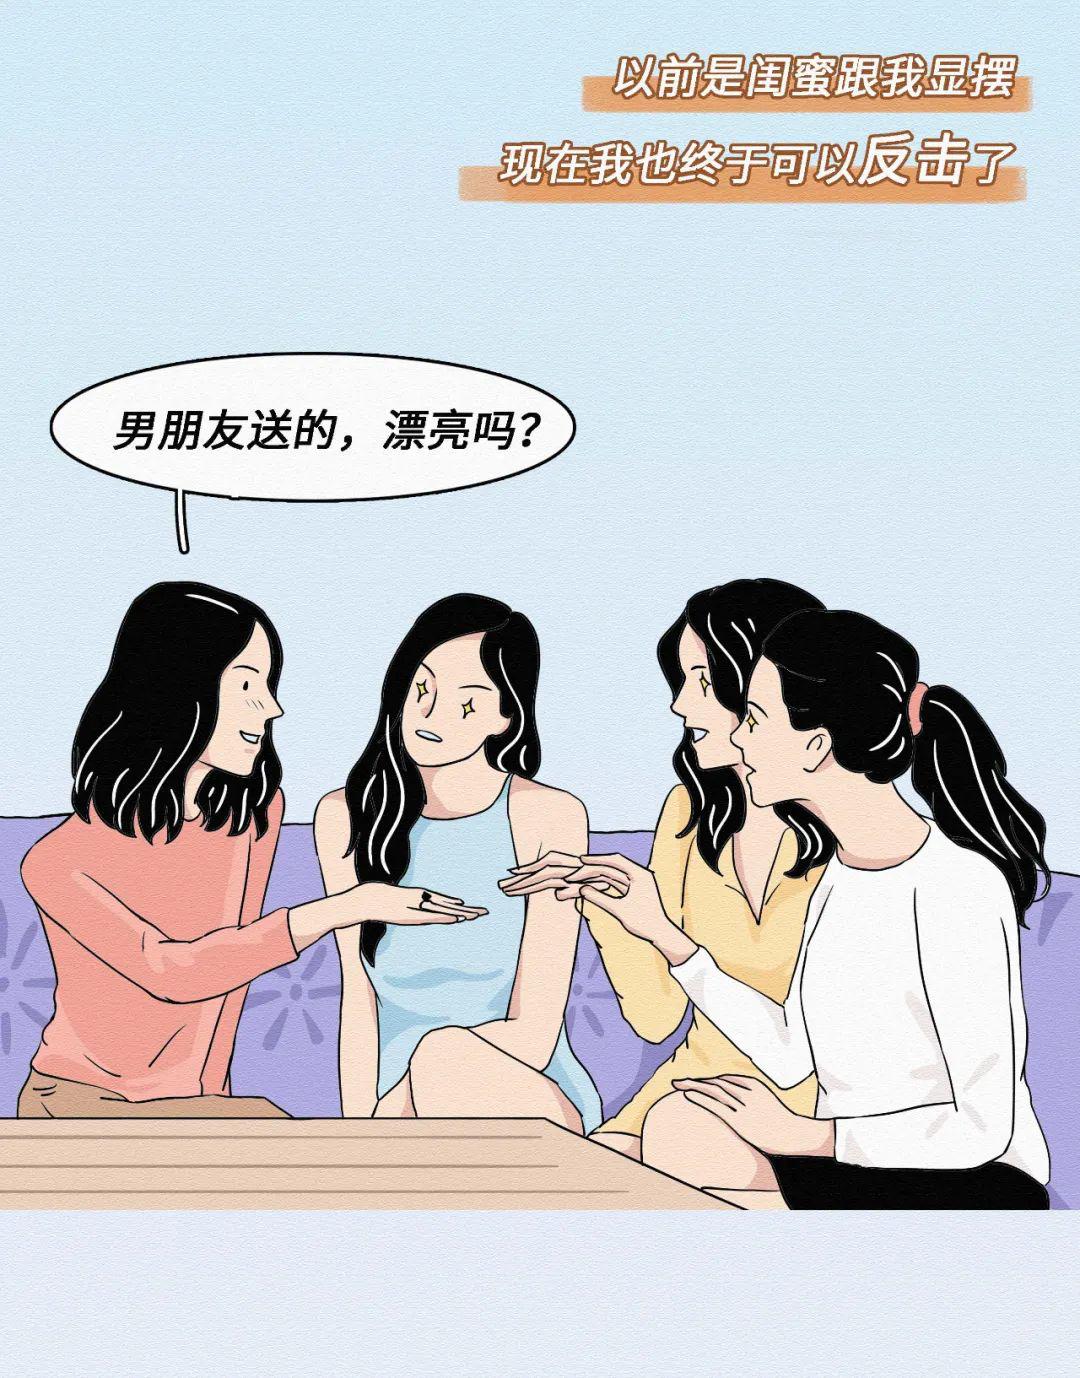 漫画扫雷&新番介绍——《citrus》禁忌的姐妹百合之恋 - 知乎